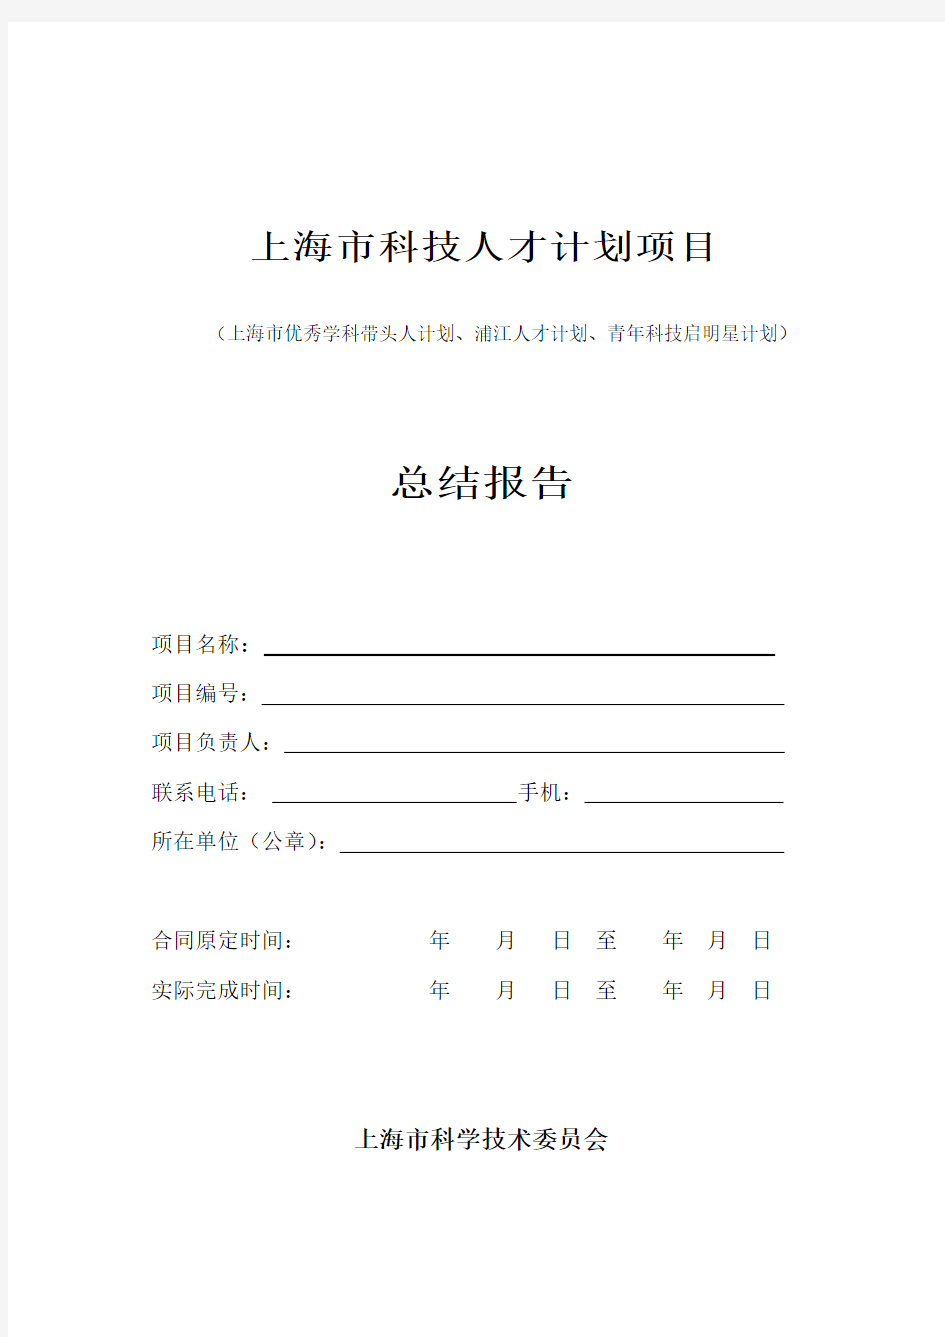 上海市科技人才计划项目验收总结报告模板(2019年版)